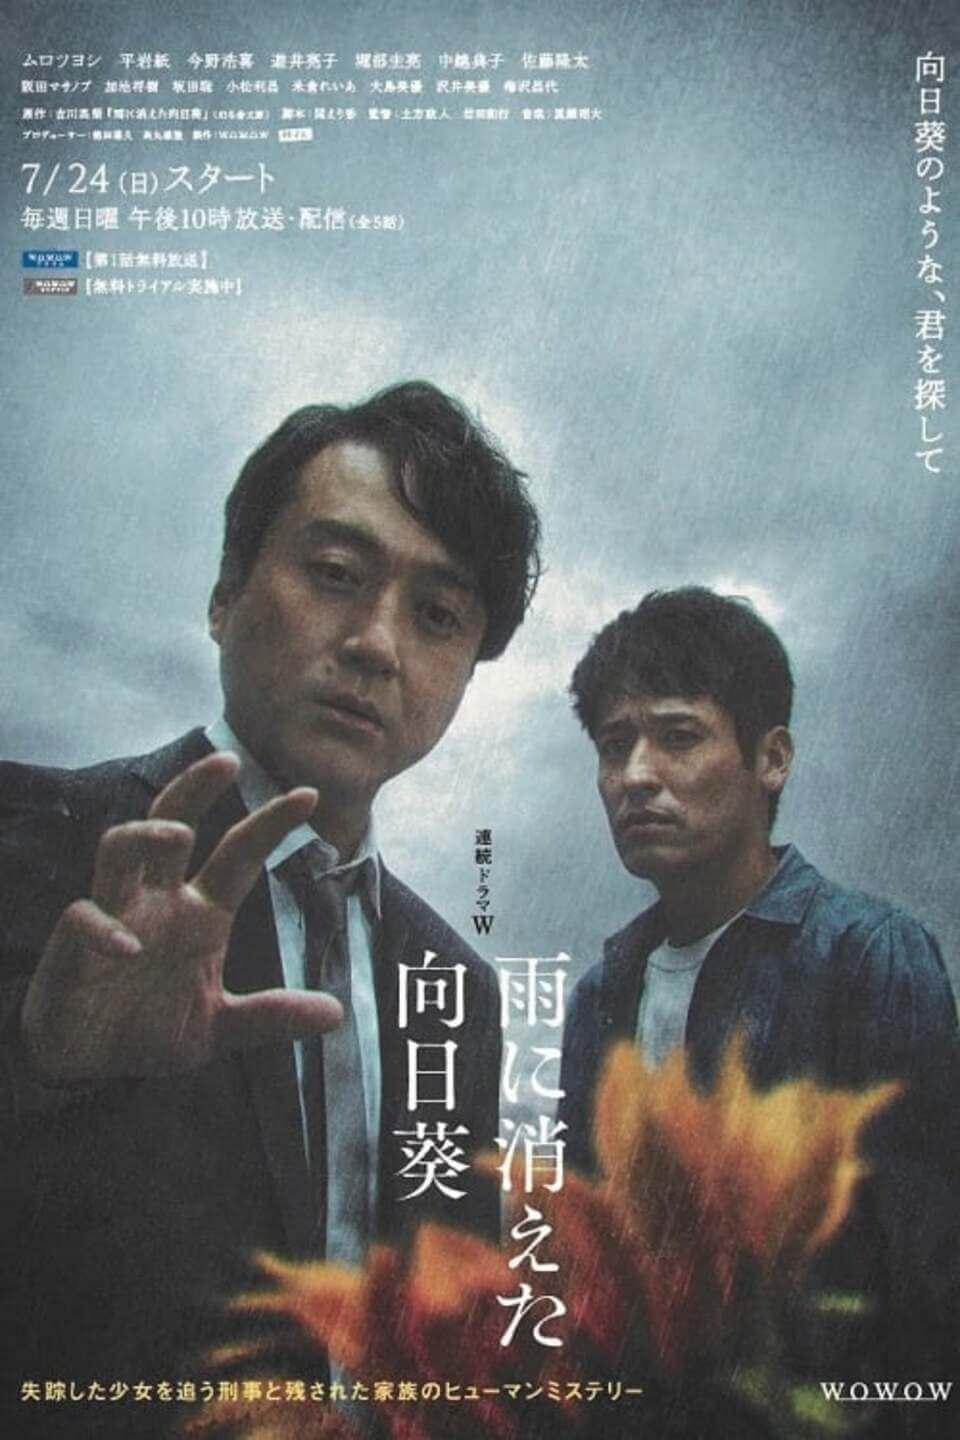 TV ratings for Ame Ni Kieta Himawari (雨に消えた向日葵) in Australia. Netflix TV series